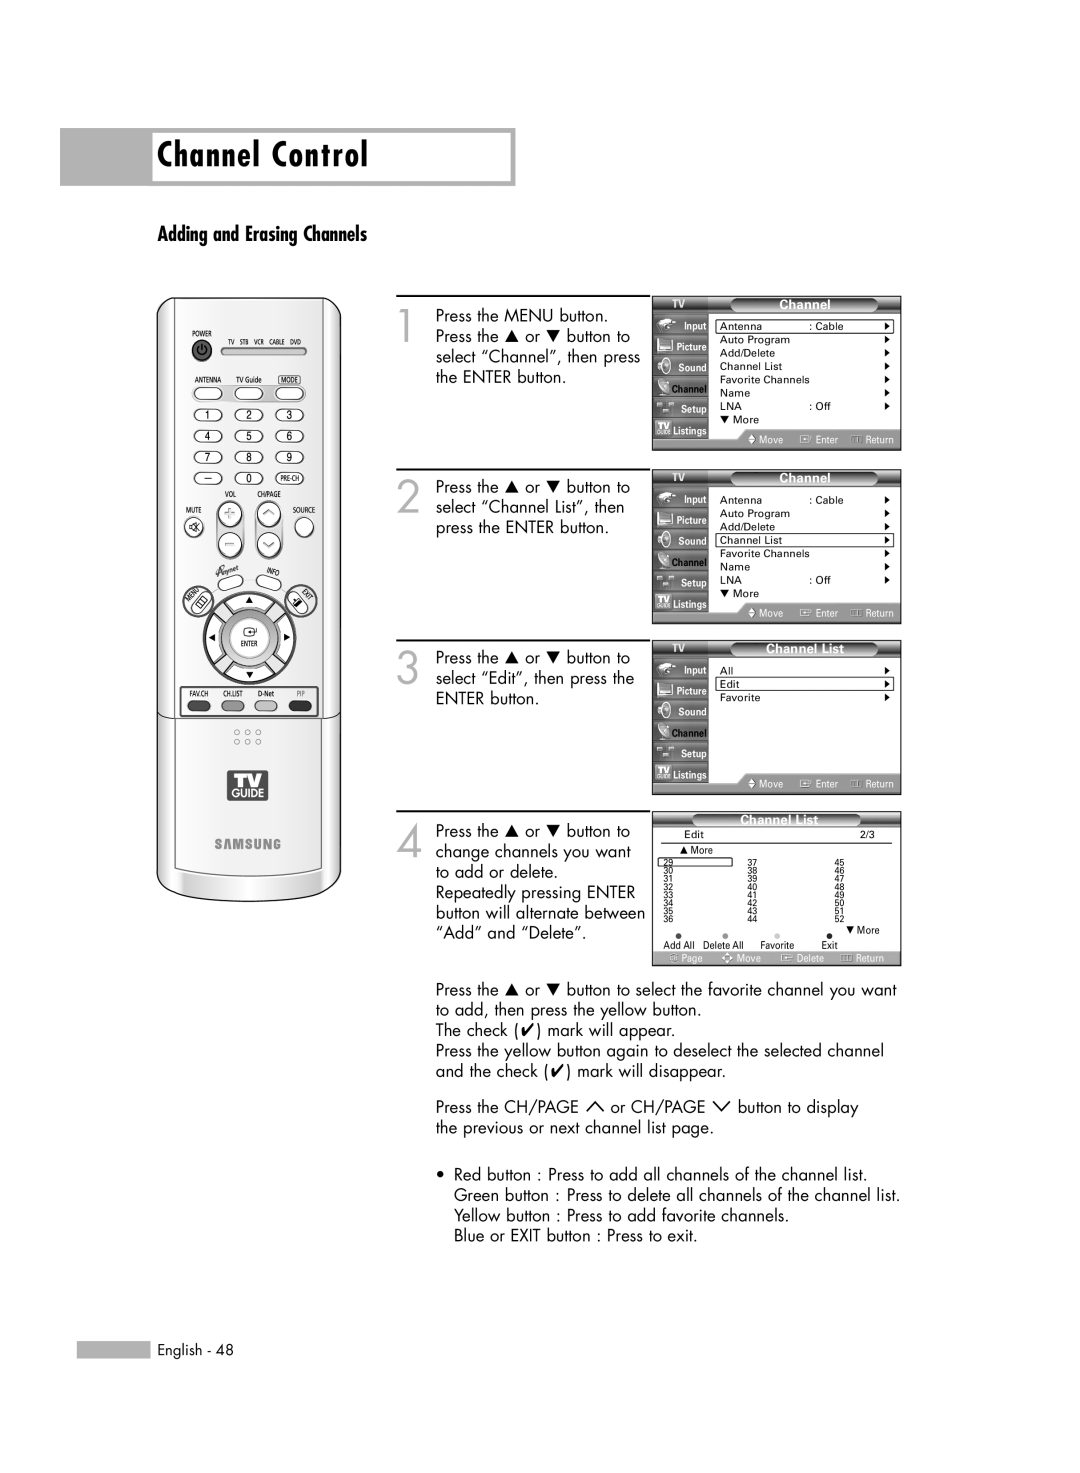 Samsung HL-R6178W, HL-R5678W, HL-R7178W manual Channel Control, Adding and Erasing Channels 